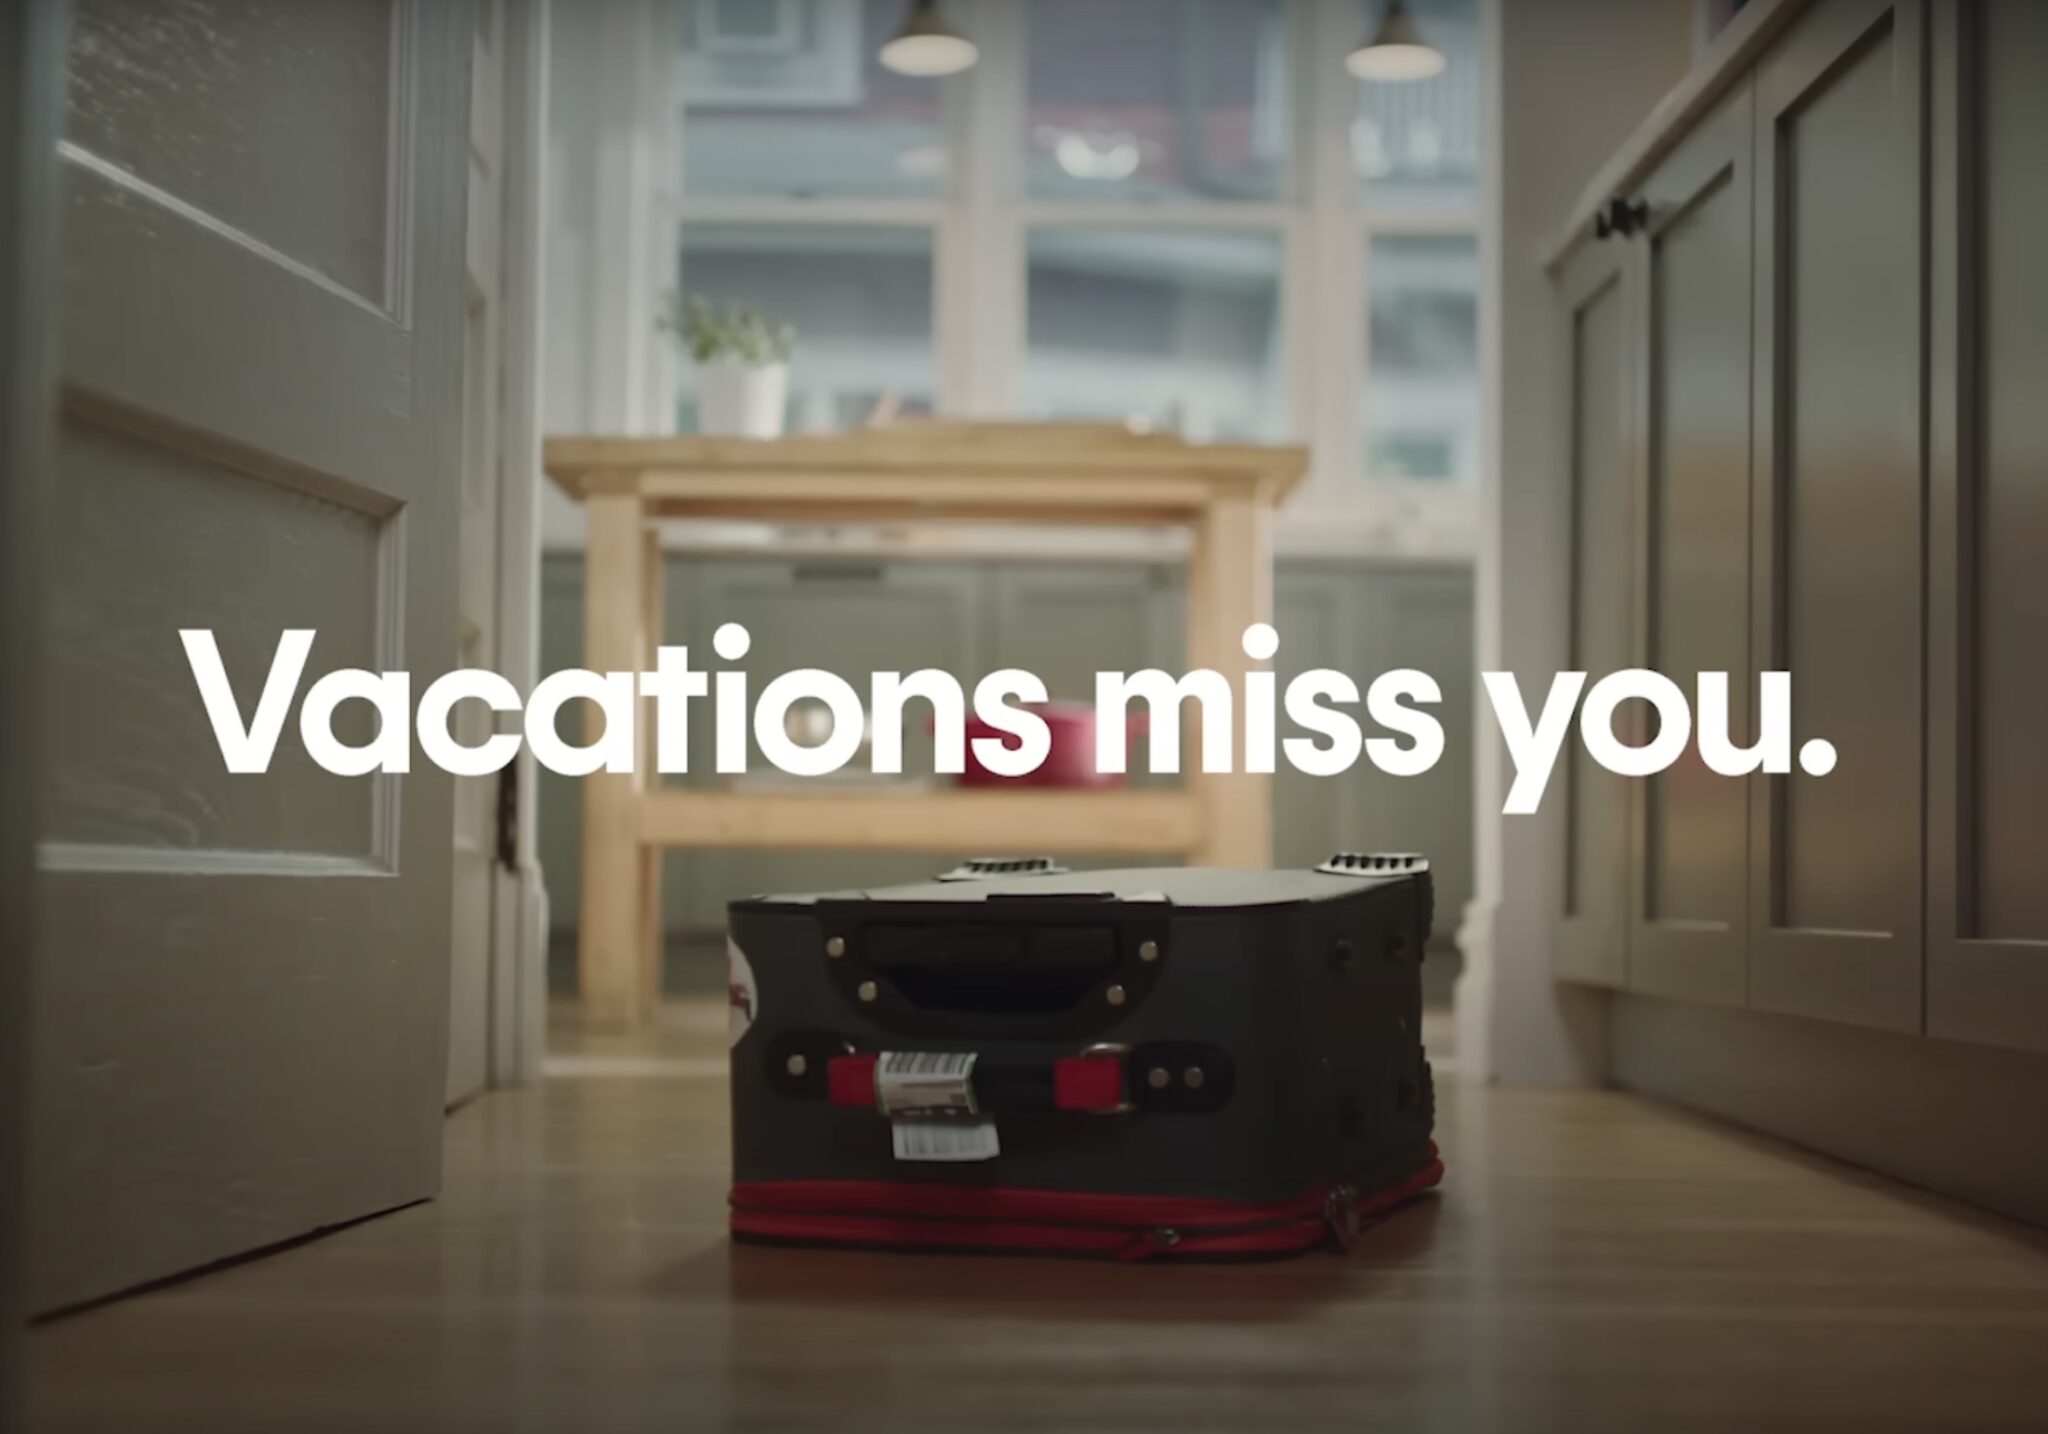 A Tripadvisor ad, Vacations Miss You. Source: Tripadvisor